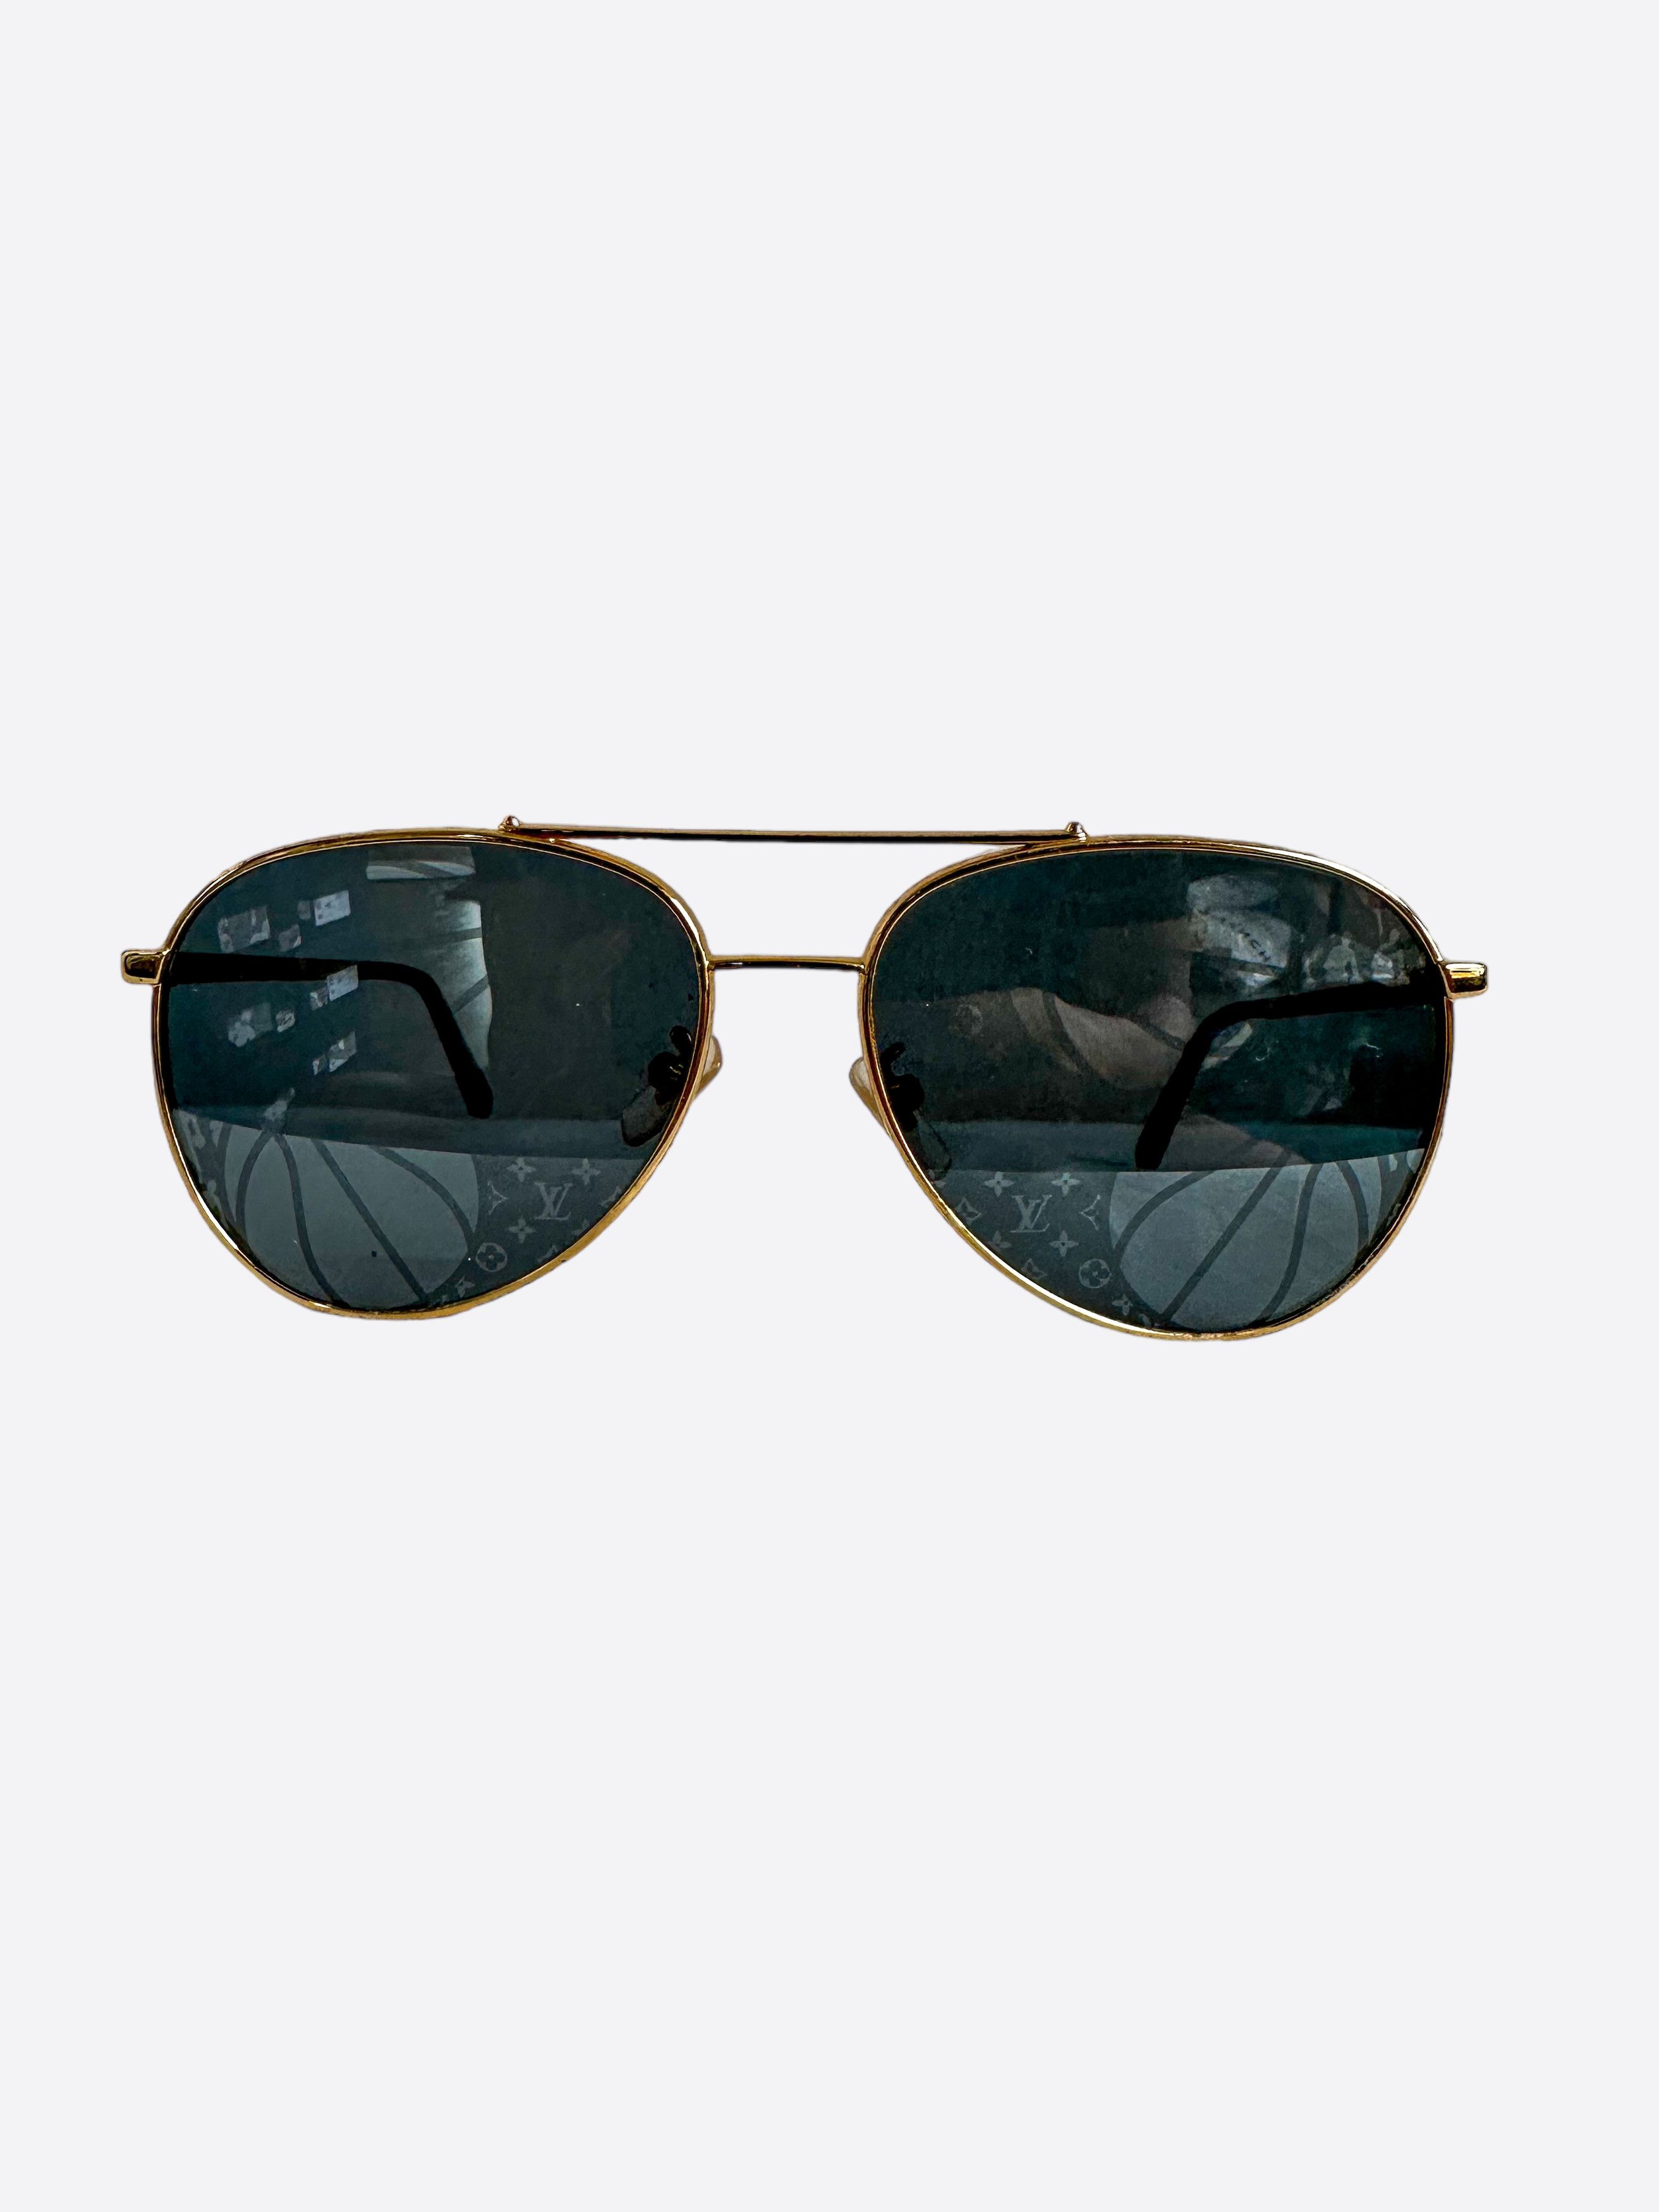 Louis Vuitton Accessories | Louis Vuitton Men LV Waimea Sunglasses Black Monogram Logo Z1082e Shades Glasses | Color: Black | Size: Os 